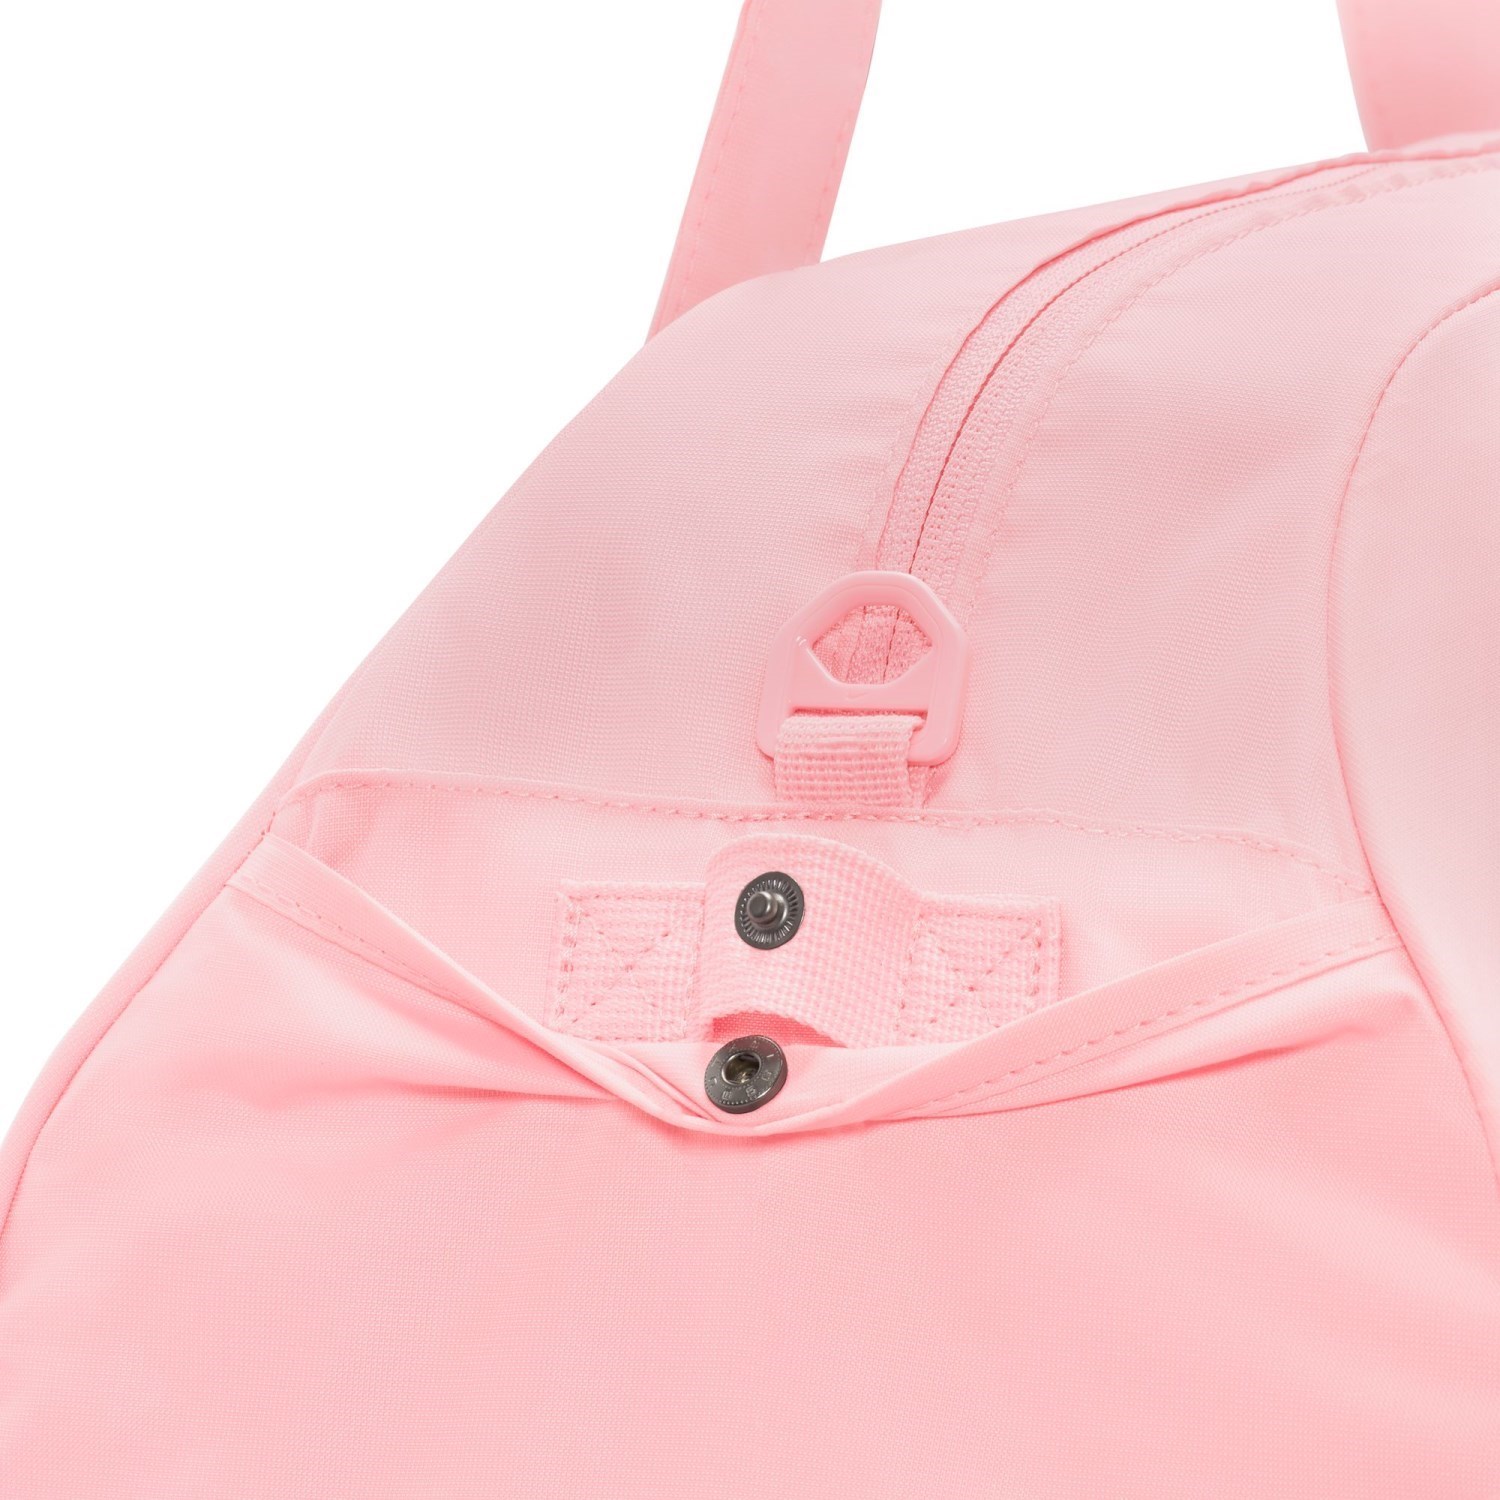 Nike Gym Club Womens Training Duffel Bag - Med Soft Pink/Fuchsia Dream ...